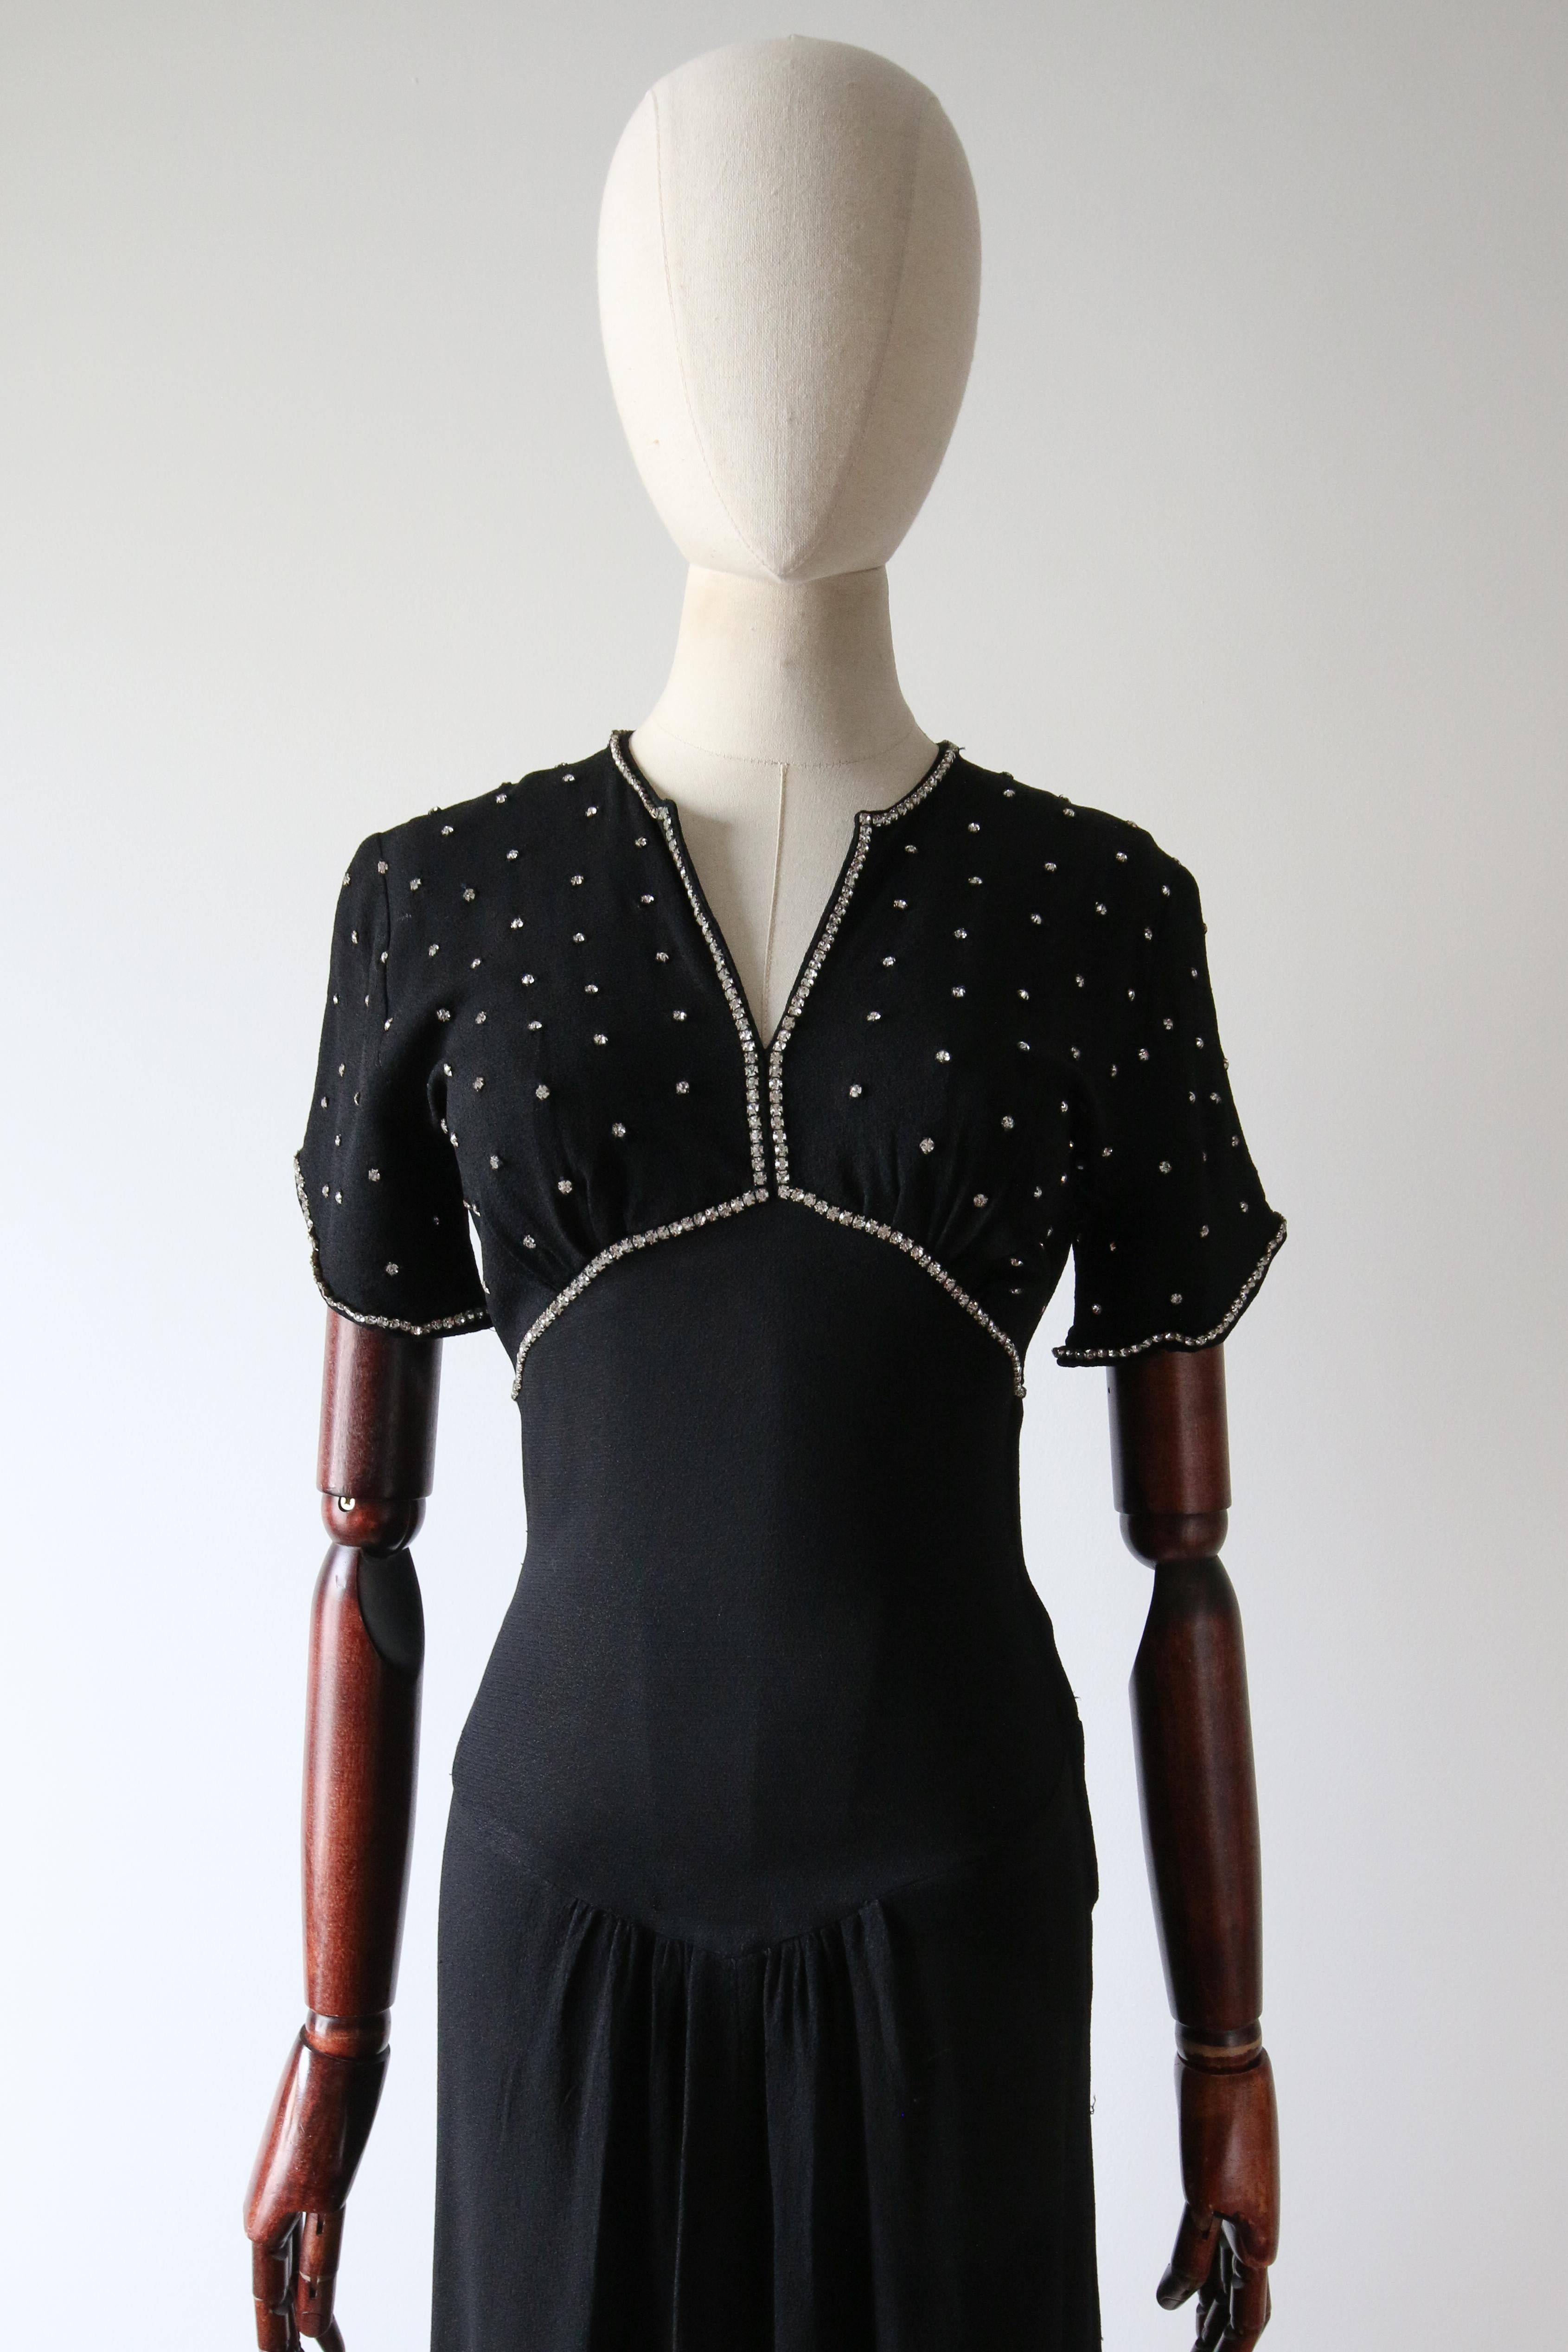 Cette époustouflante robe du soir en crêpe de soie noir des années 1930, décorée de strass argentés sertis, est exactement la pièce qu'il vous faut pour cette soirée spéciale.

Le décolleté en V de la robe est encadré par une bordure de strass